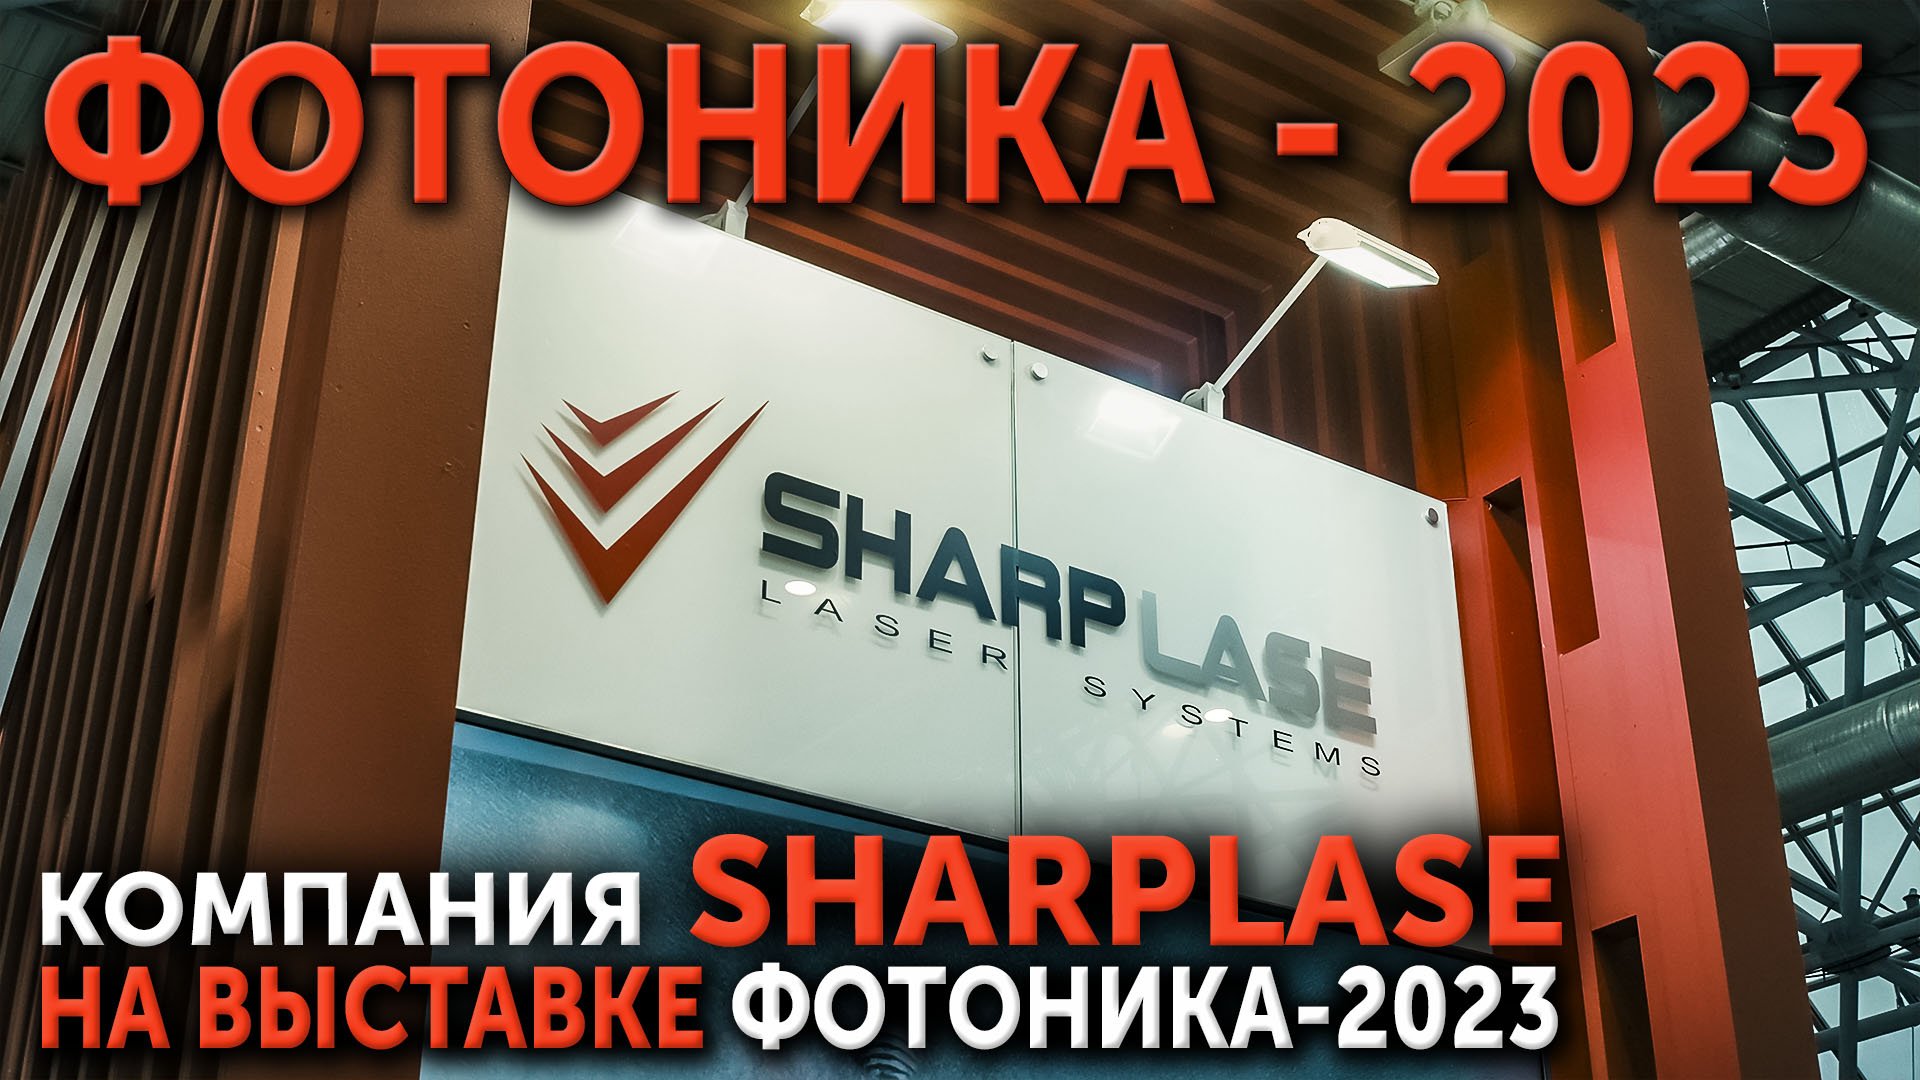 Компания SHARPLASE на выставке Фотоника 2023.